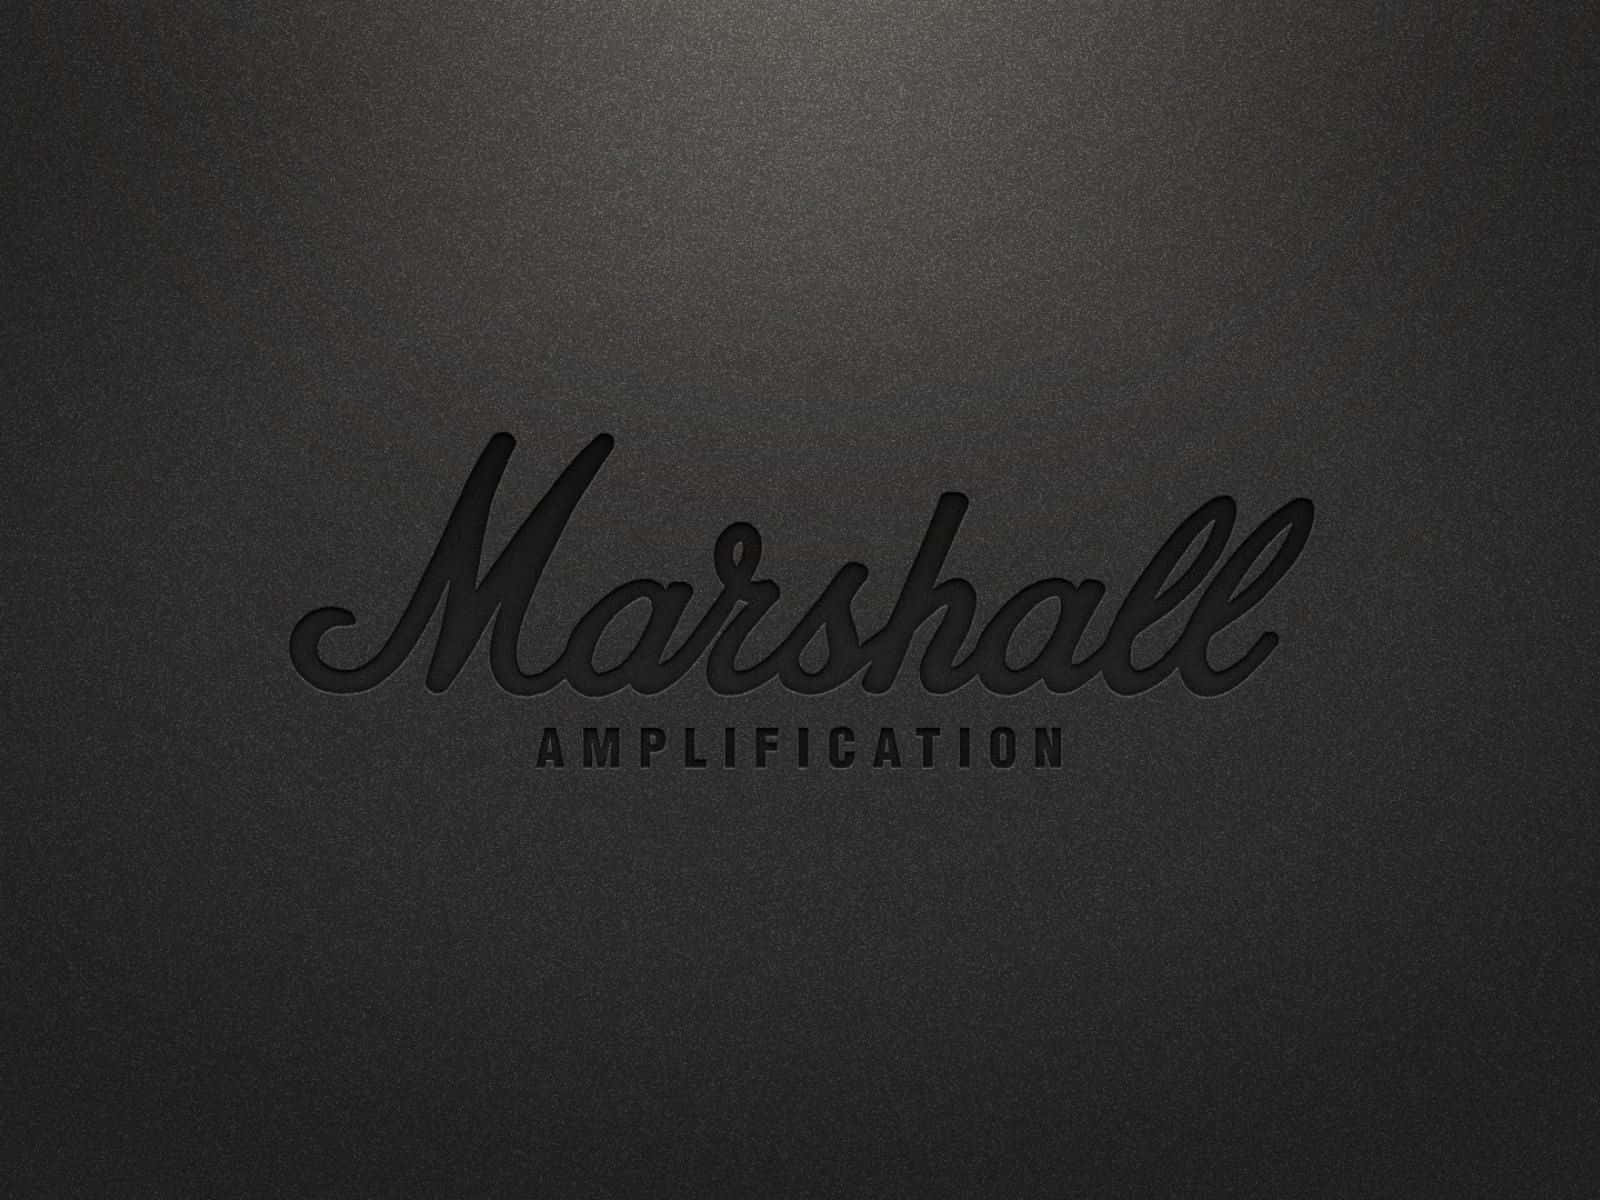 Logotipode La Aplicación De Marshall En Un Fondo Negro Fondo de pantalla